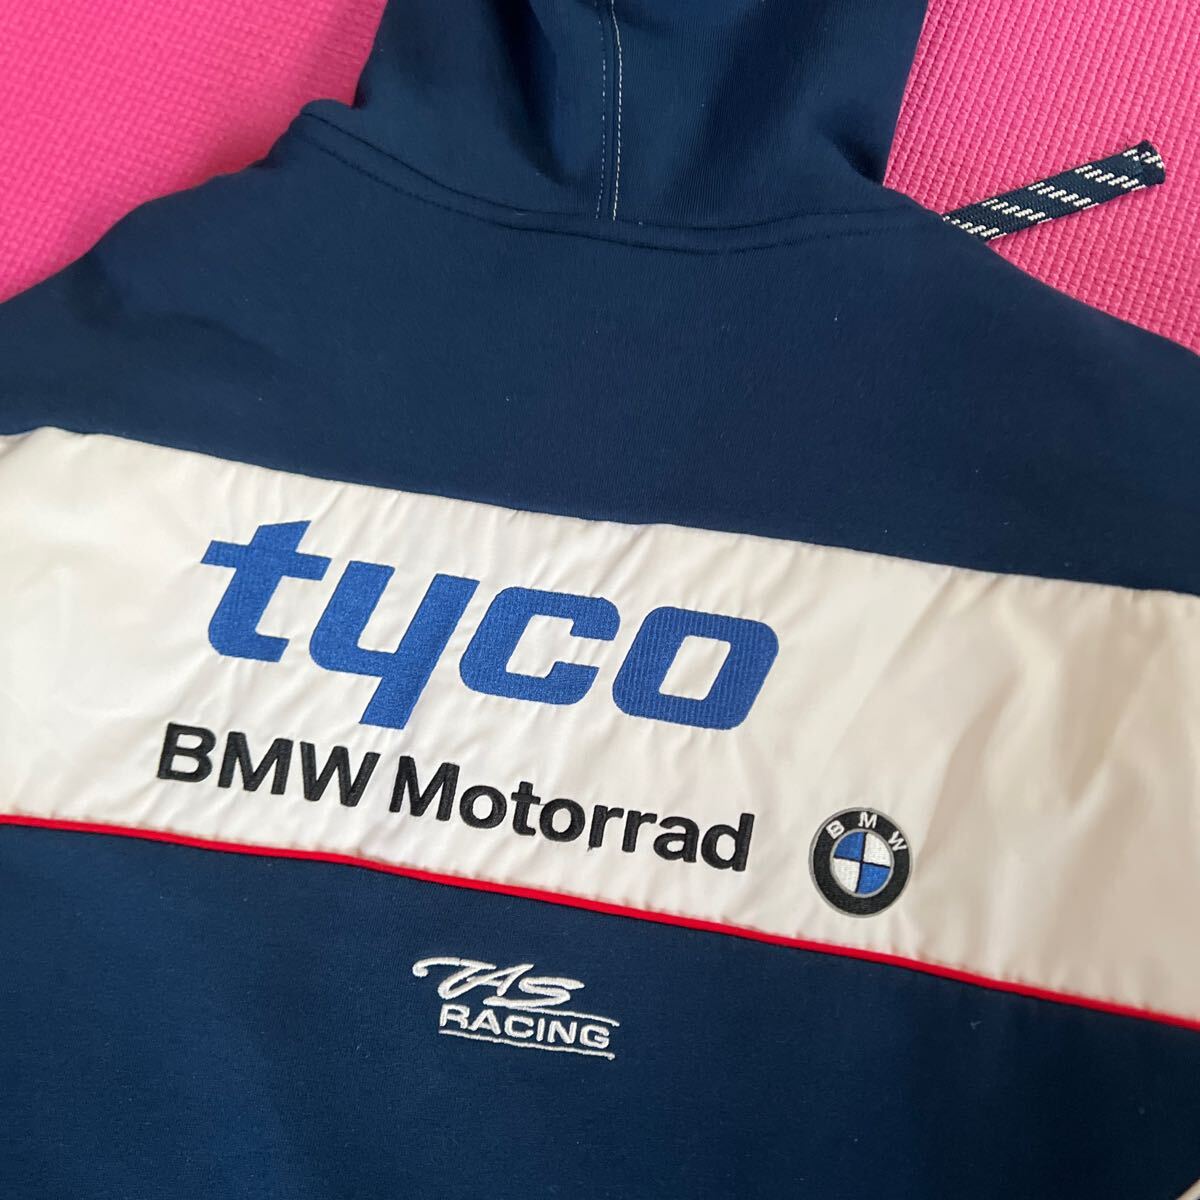 ◆BMW tyco SuperBike 公式 パーカー 【L】フーディ Team TAS Racing ネイビー USED品◆刺しゅうロゴ TTマン島 BSB motoGP BMW Motorradの画像8